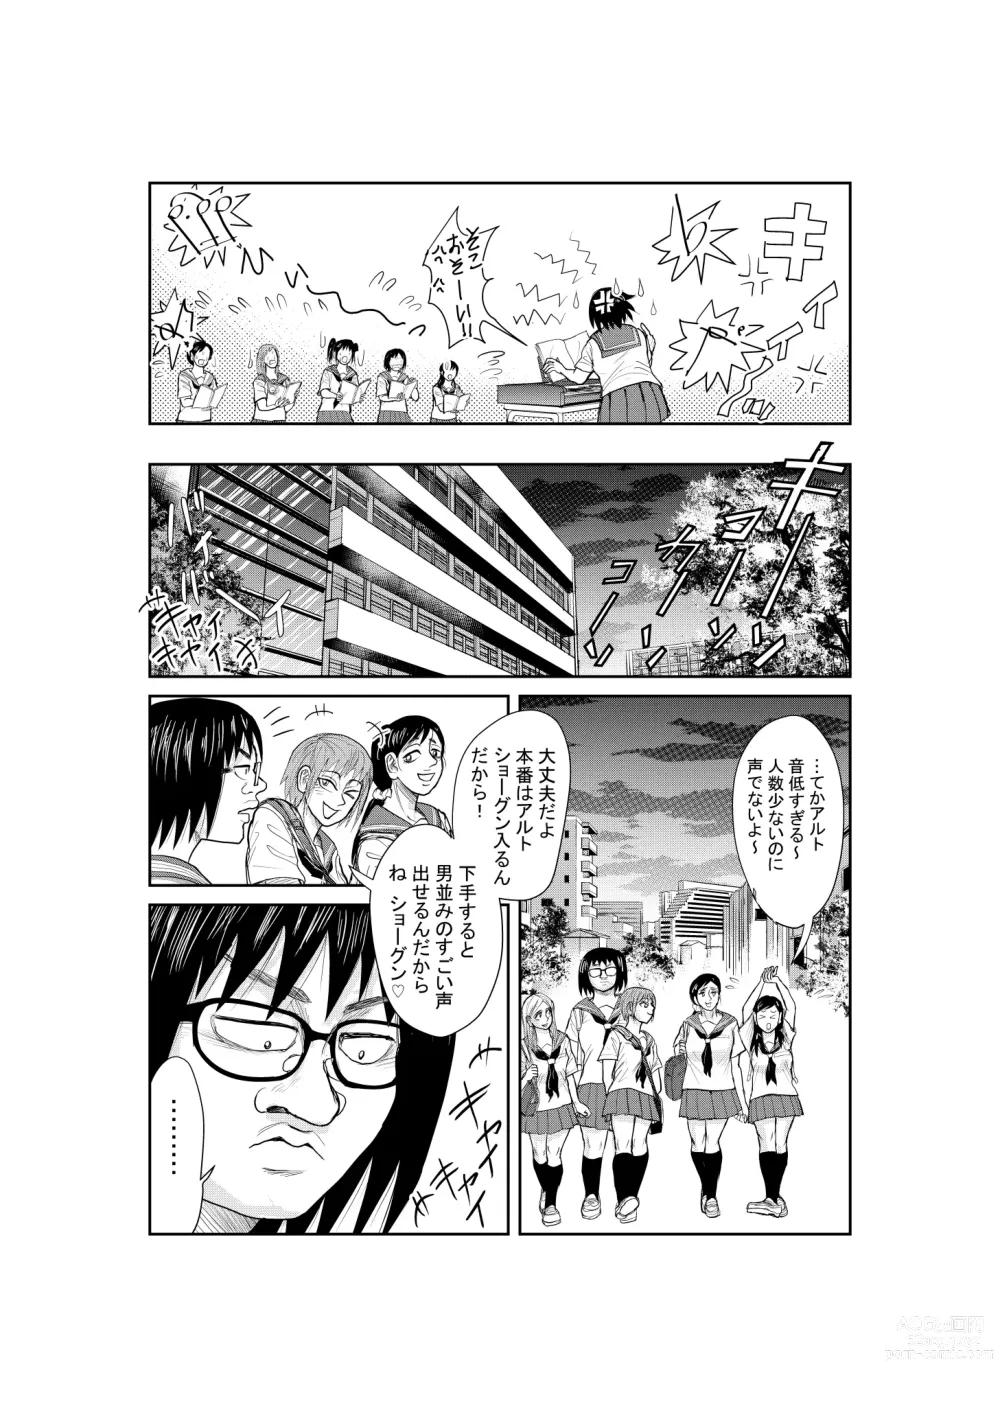 Page 23 of doujinshi Neko